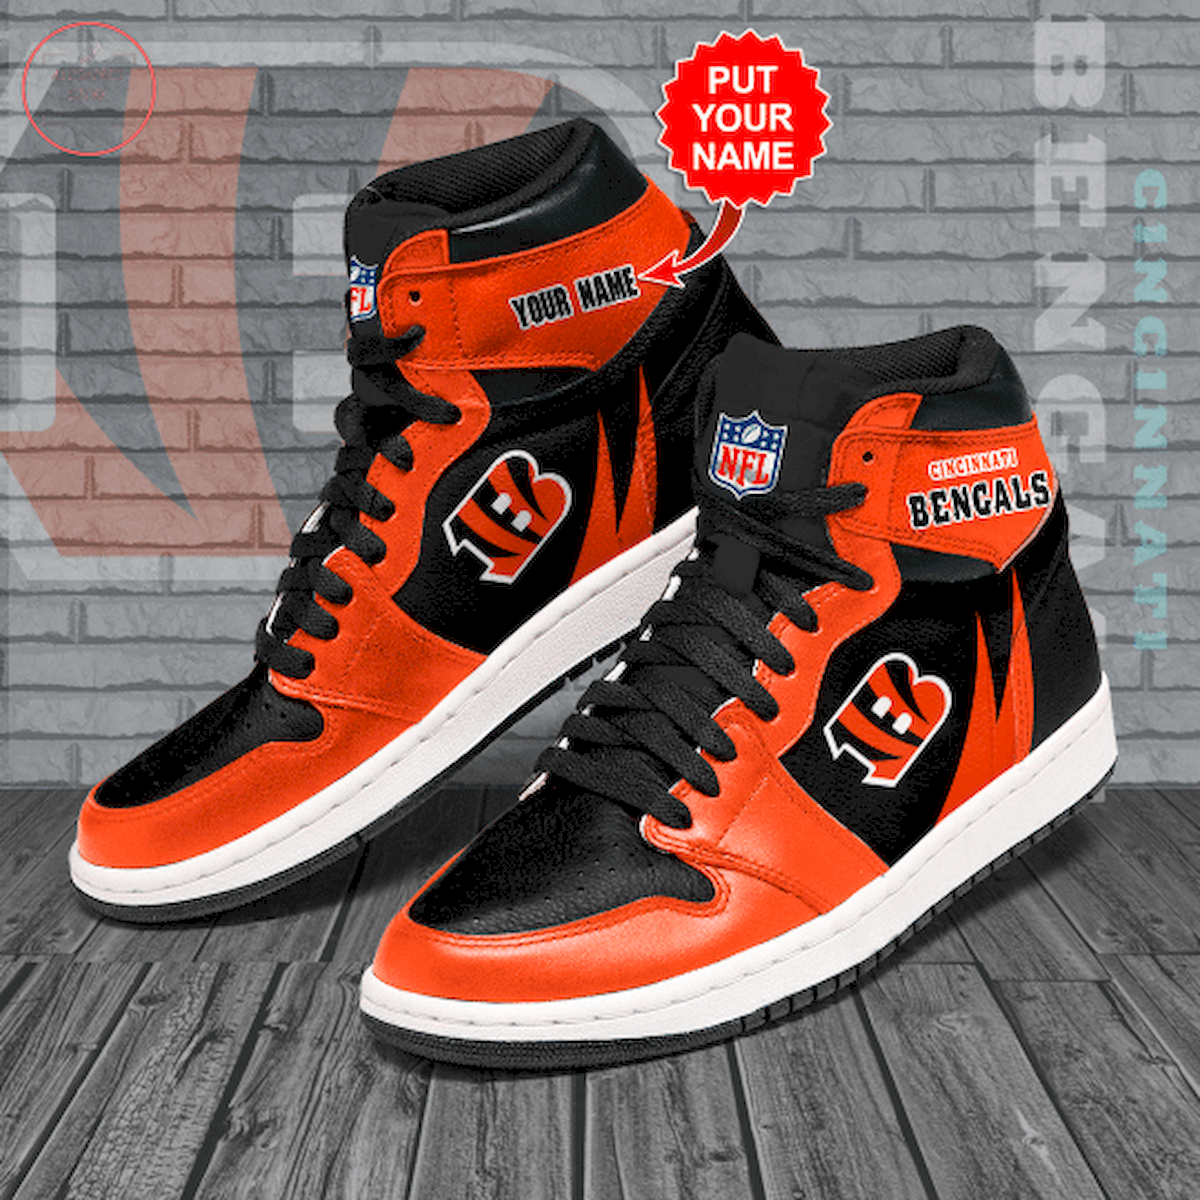 Cincinnati Bengals NFL Custom High Air Jordan 1 Sneakers